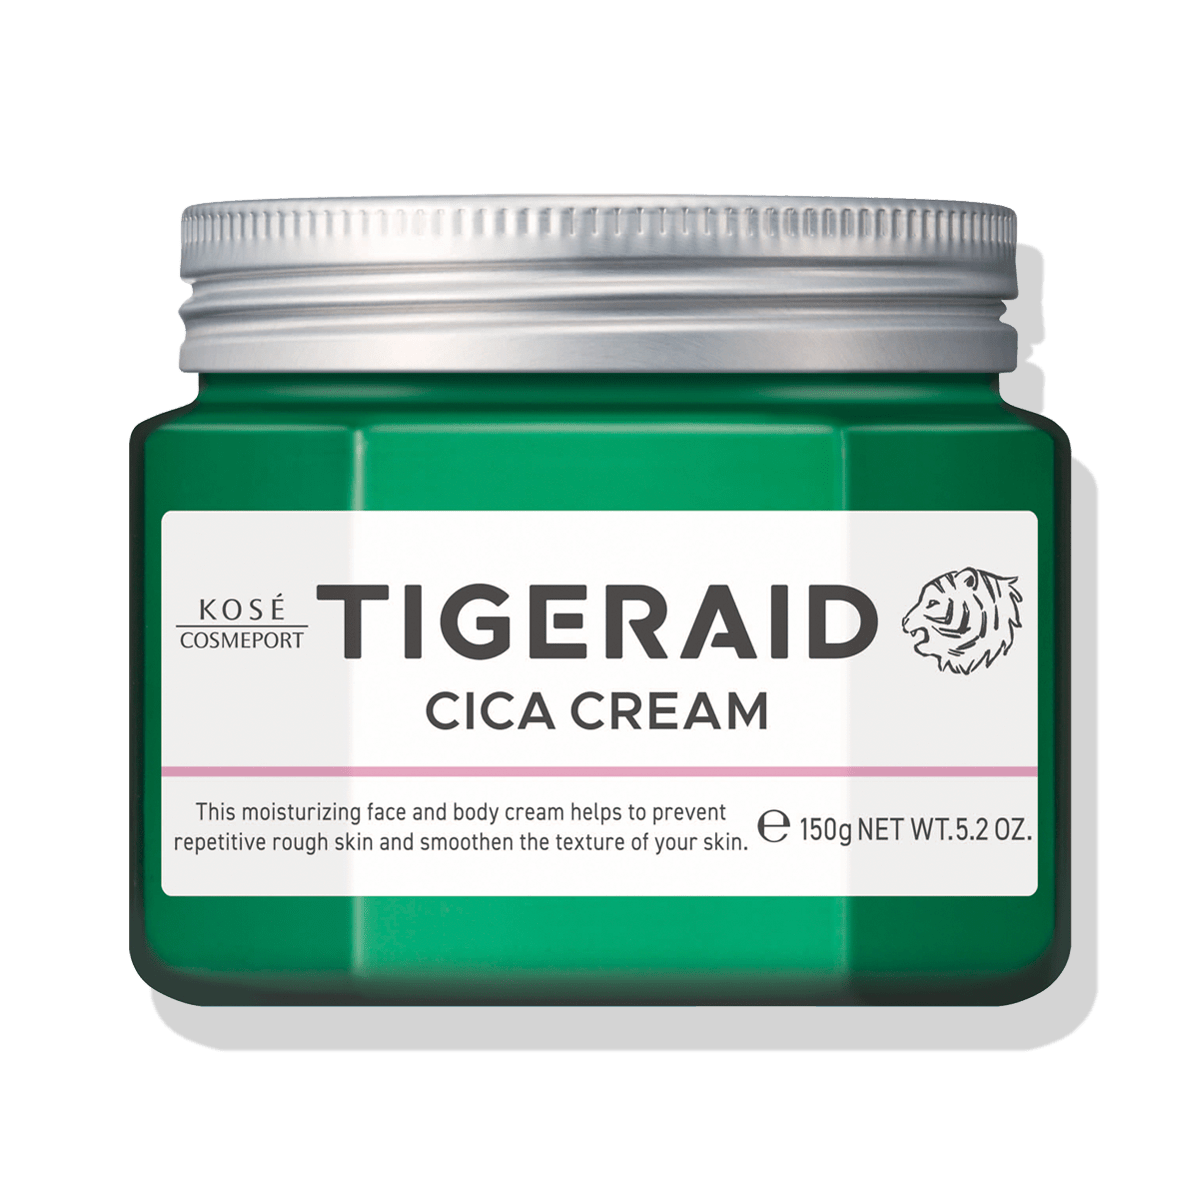 Kosé Tigeraid Cica Moisturizing Repair Cream For Face & Body 150g